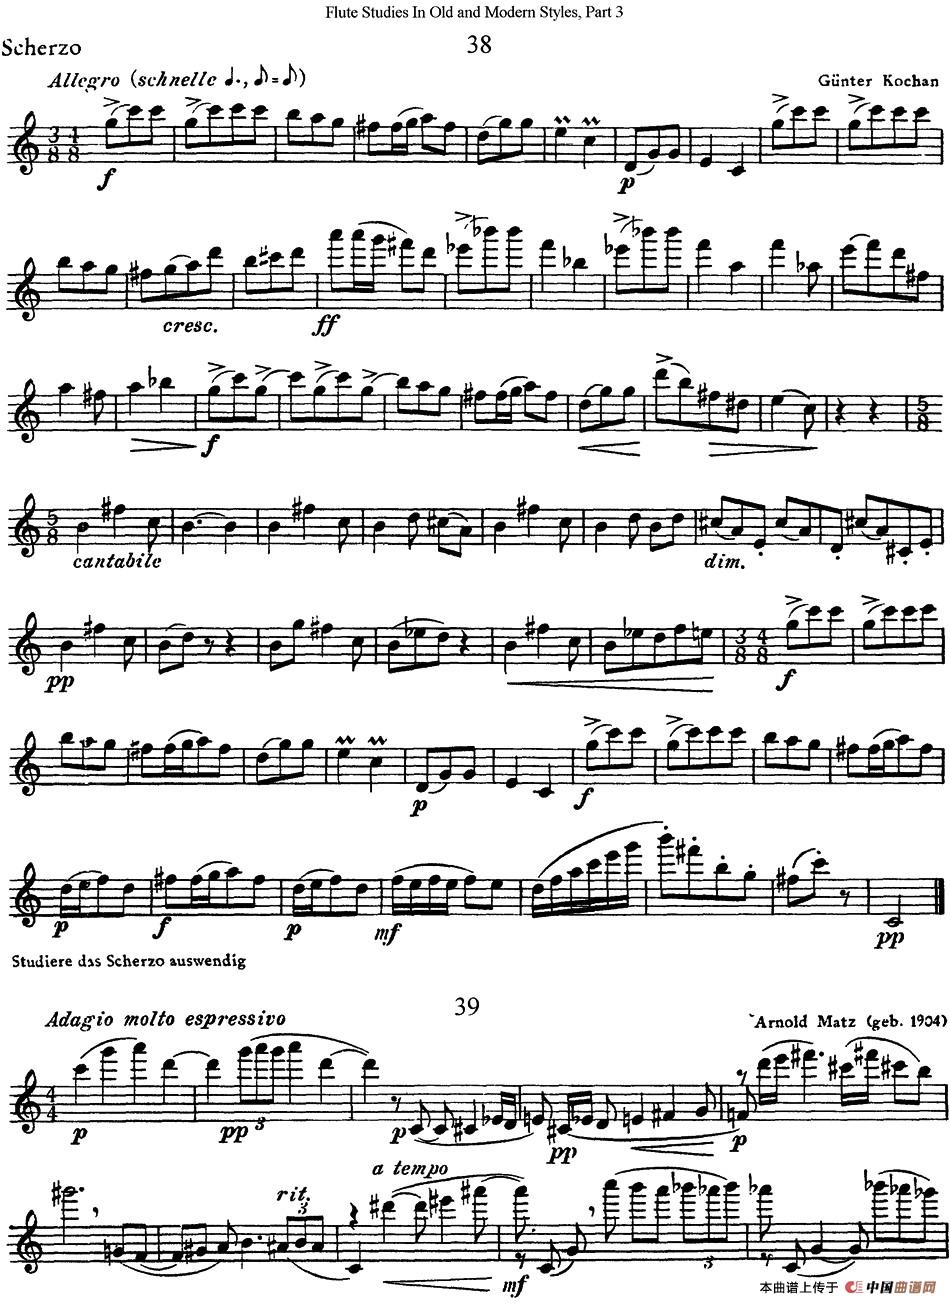 斯勒新老风格长笛练习重奏曲（第三部分）（N